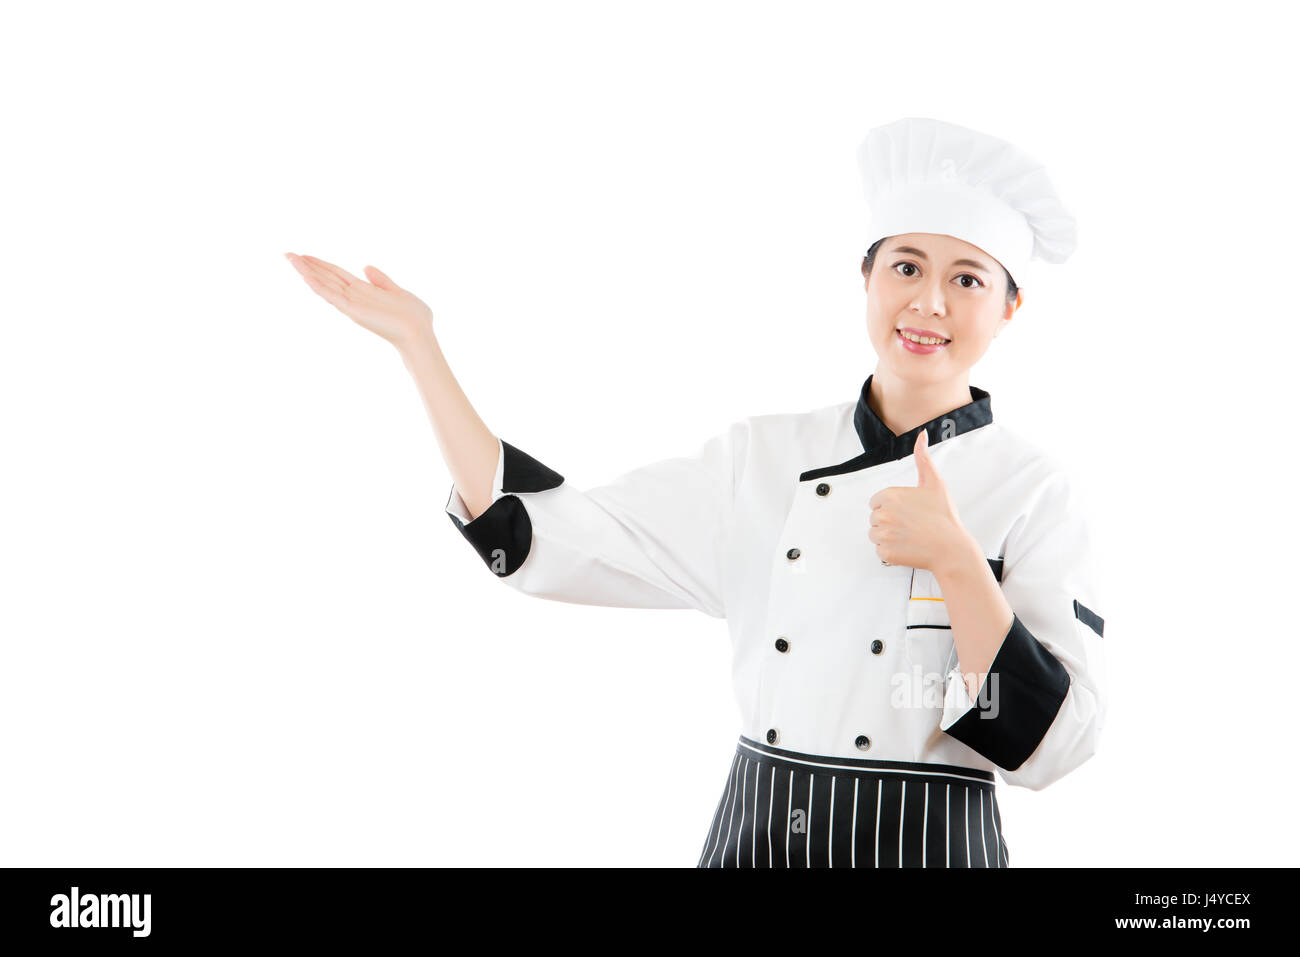 Cuisinier ou chef femme montrant et présentation de Thumbs up pour la bonne cuisine. geste isolé sur fond blanc. profession et l'industrie job concept. Banque D'Images